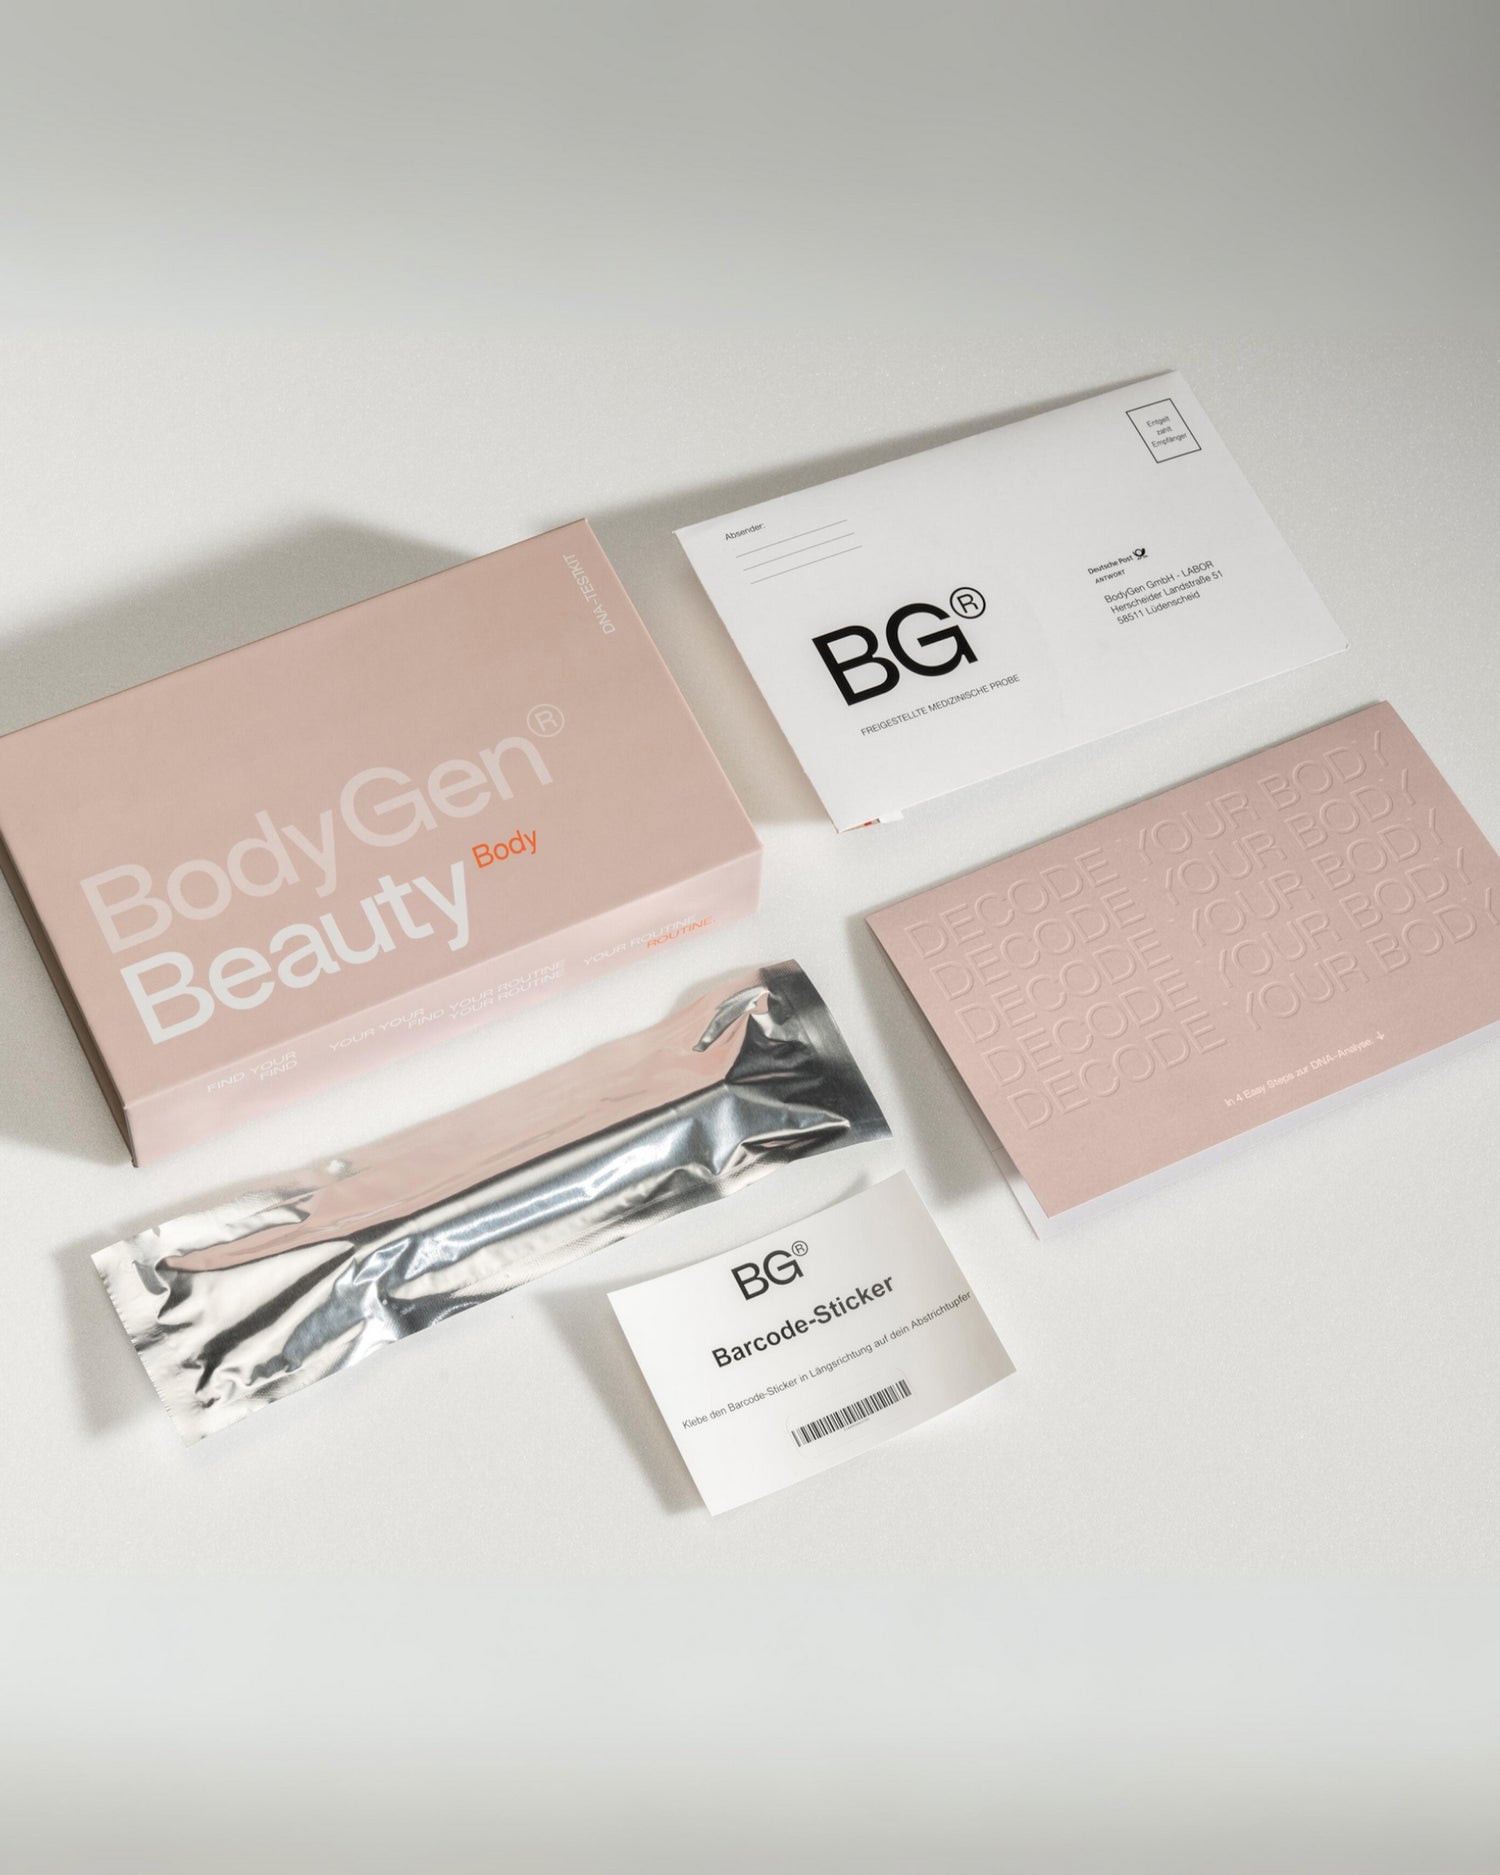 BodyGen Beauty Body DNA Test Kit mit ausgebreitetem Inhalt 